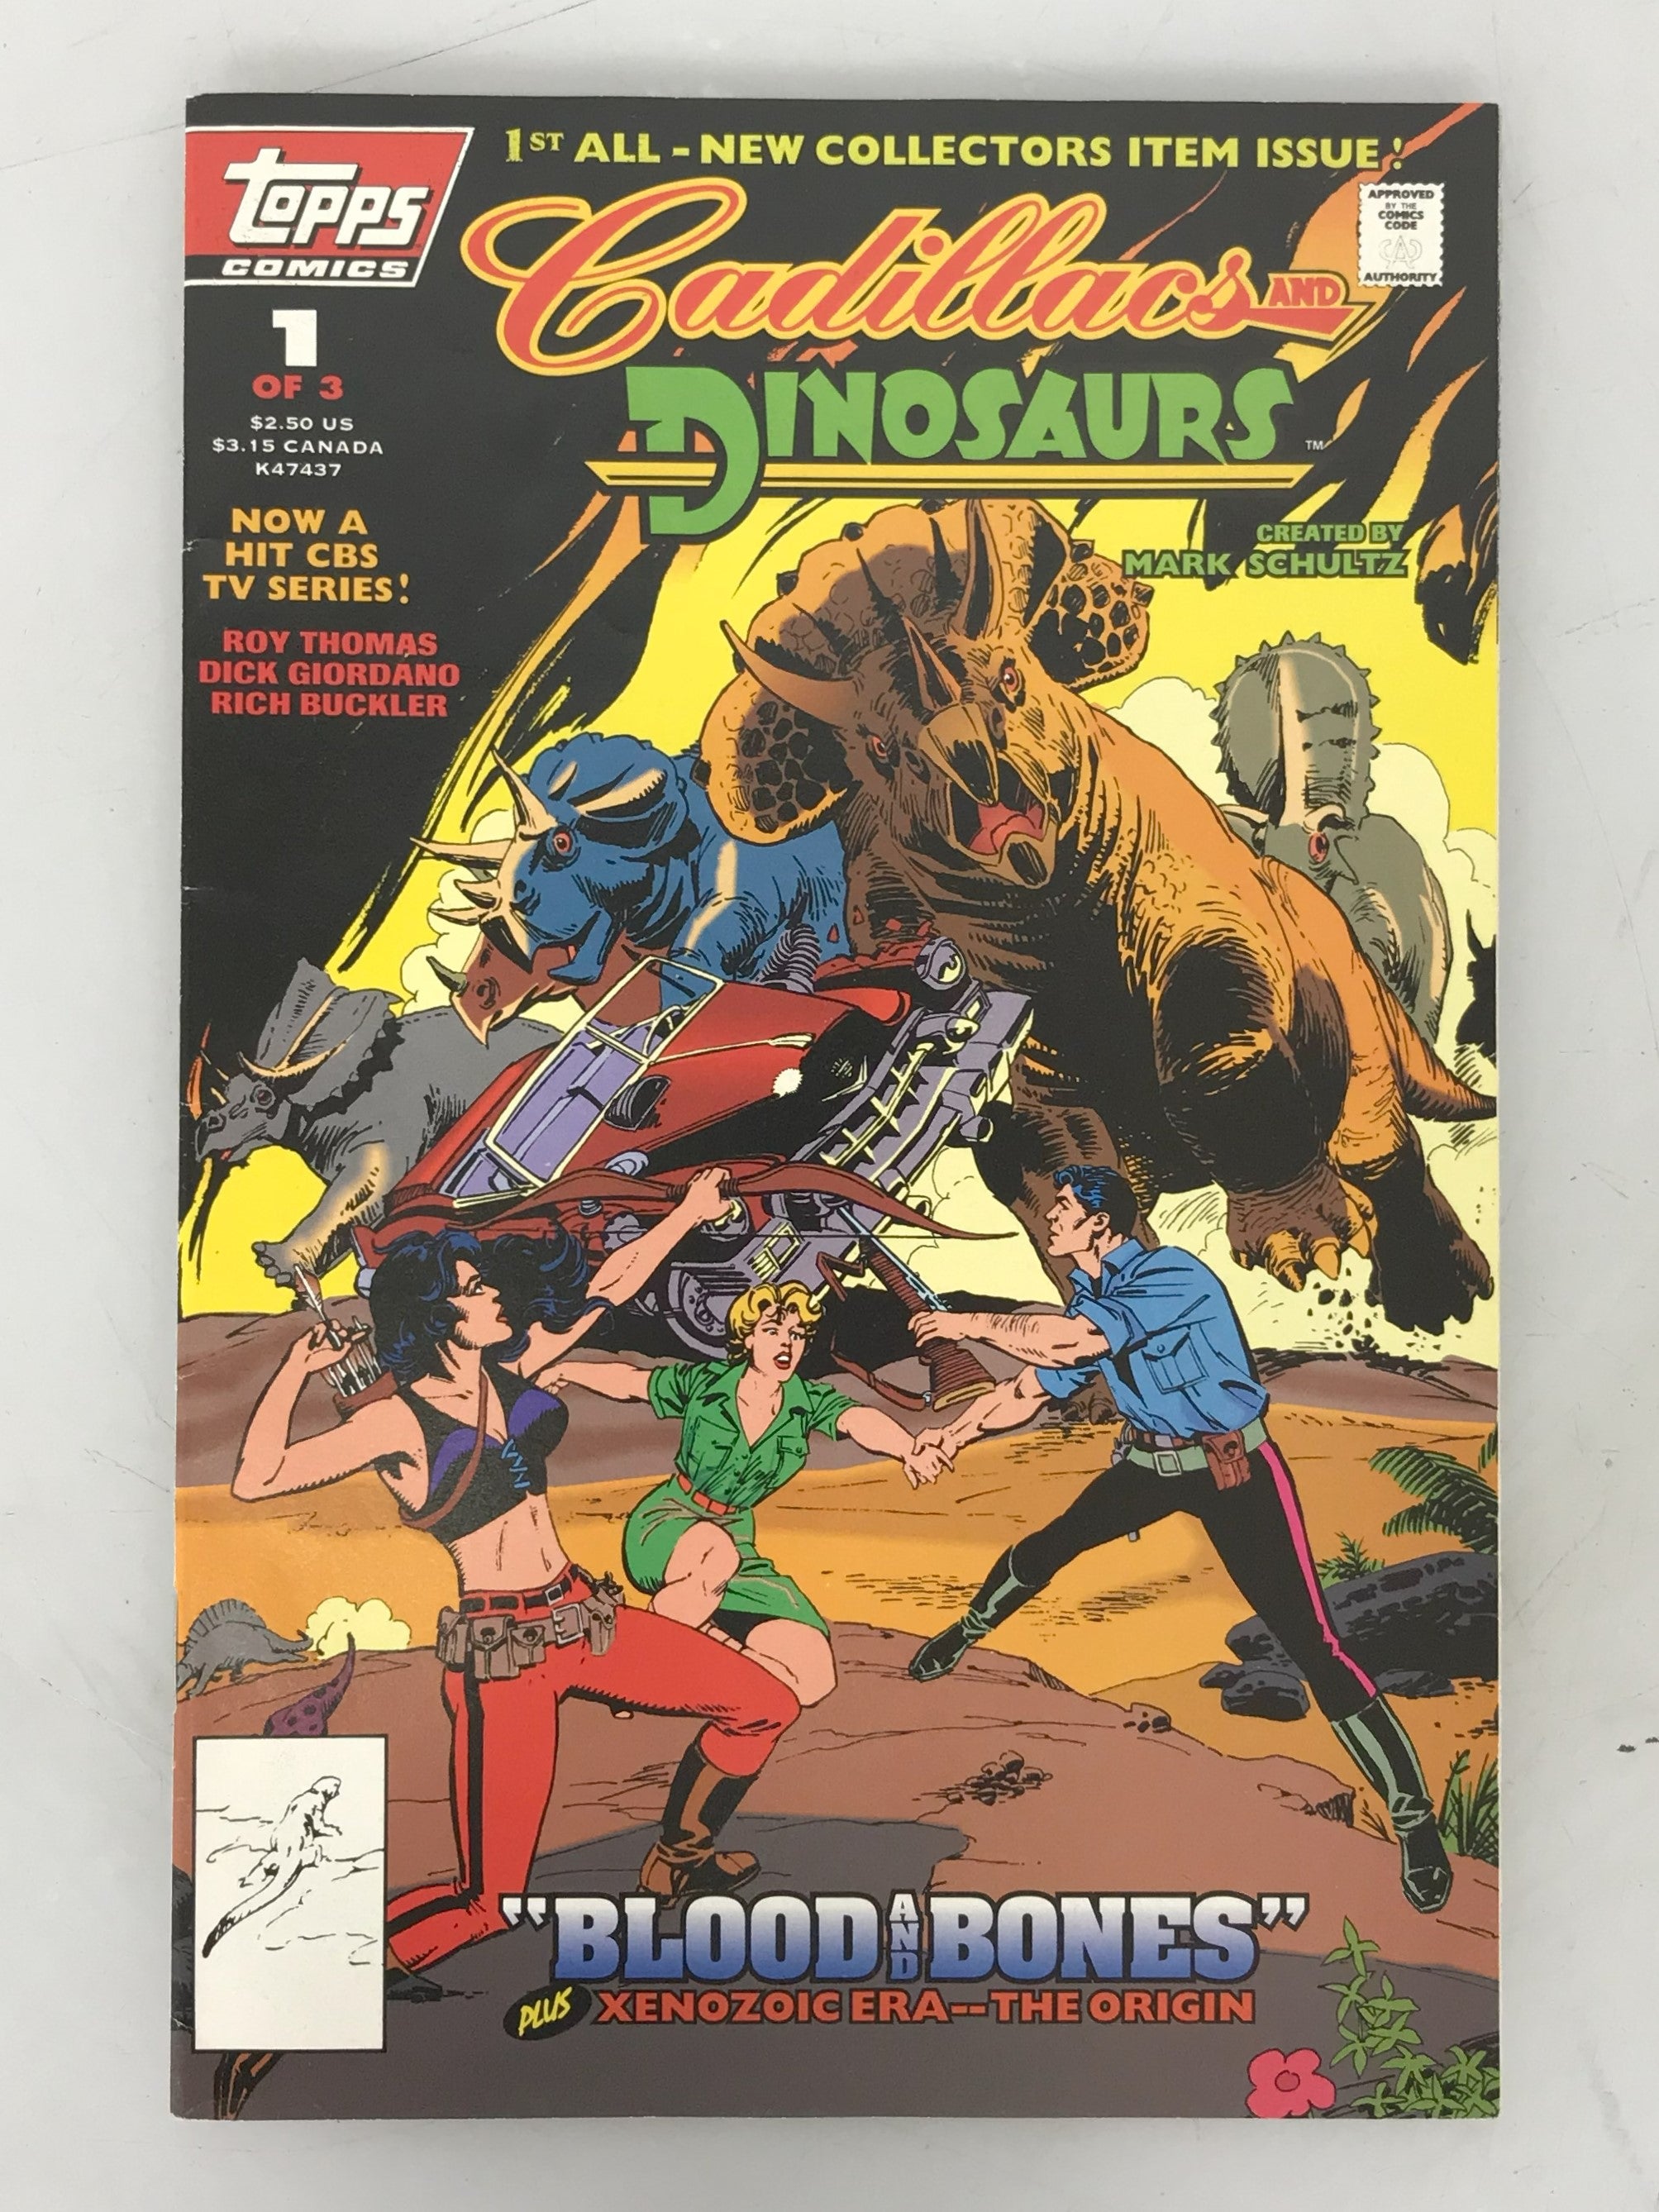 Cadillacs and Dinosaurs Vol. 2 No. 1 1994